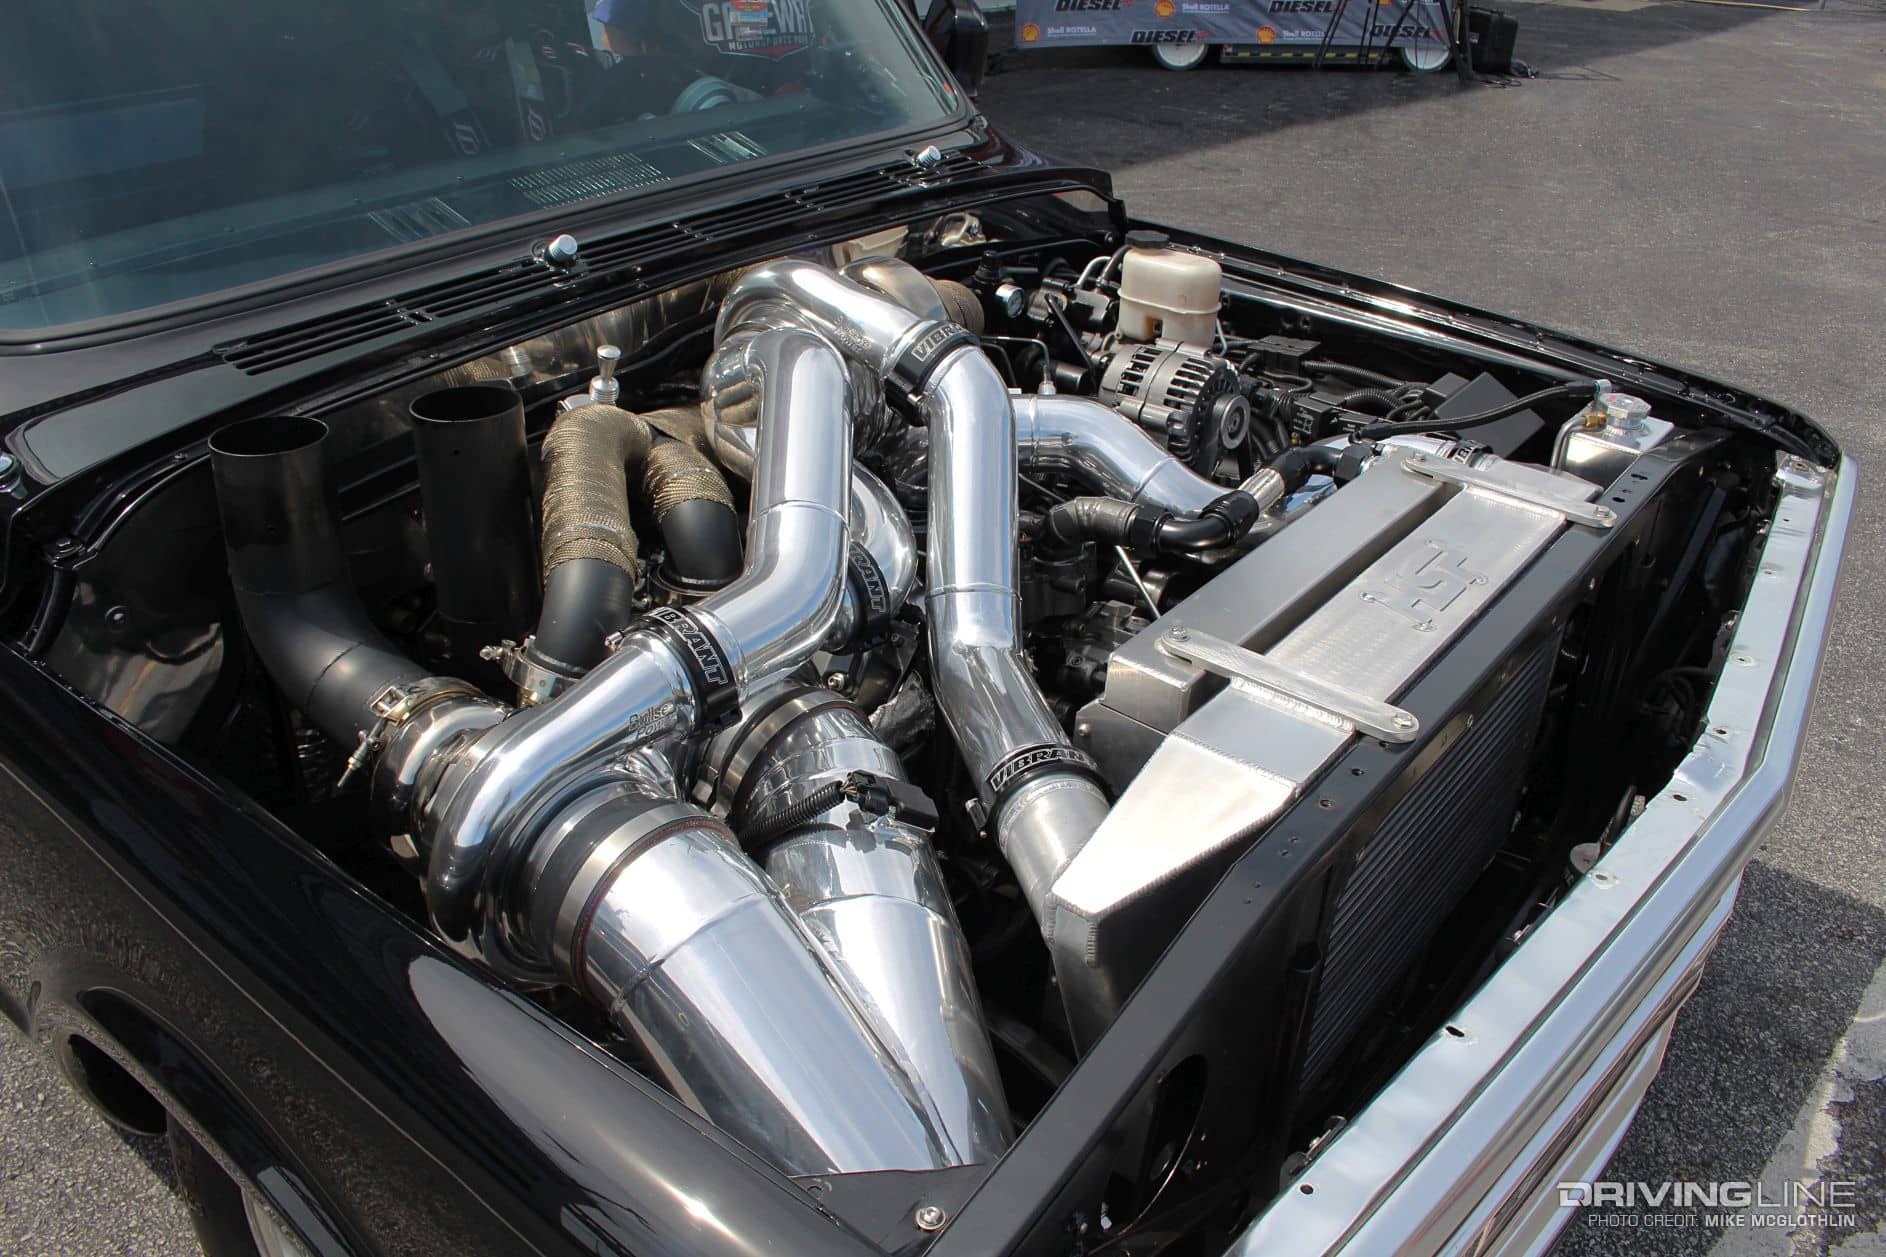 1969 Chevy C10 med en tredobbelt turbo Duramaks i motorrummet